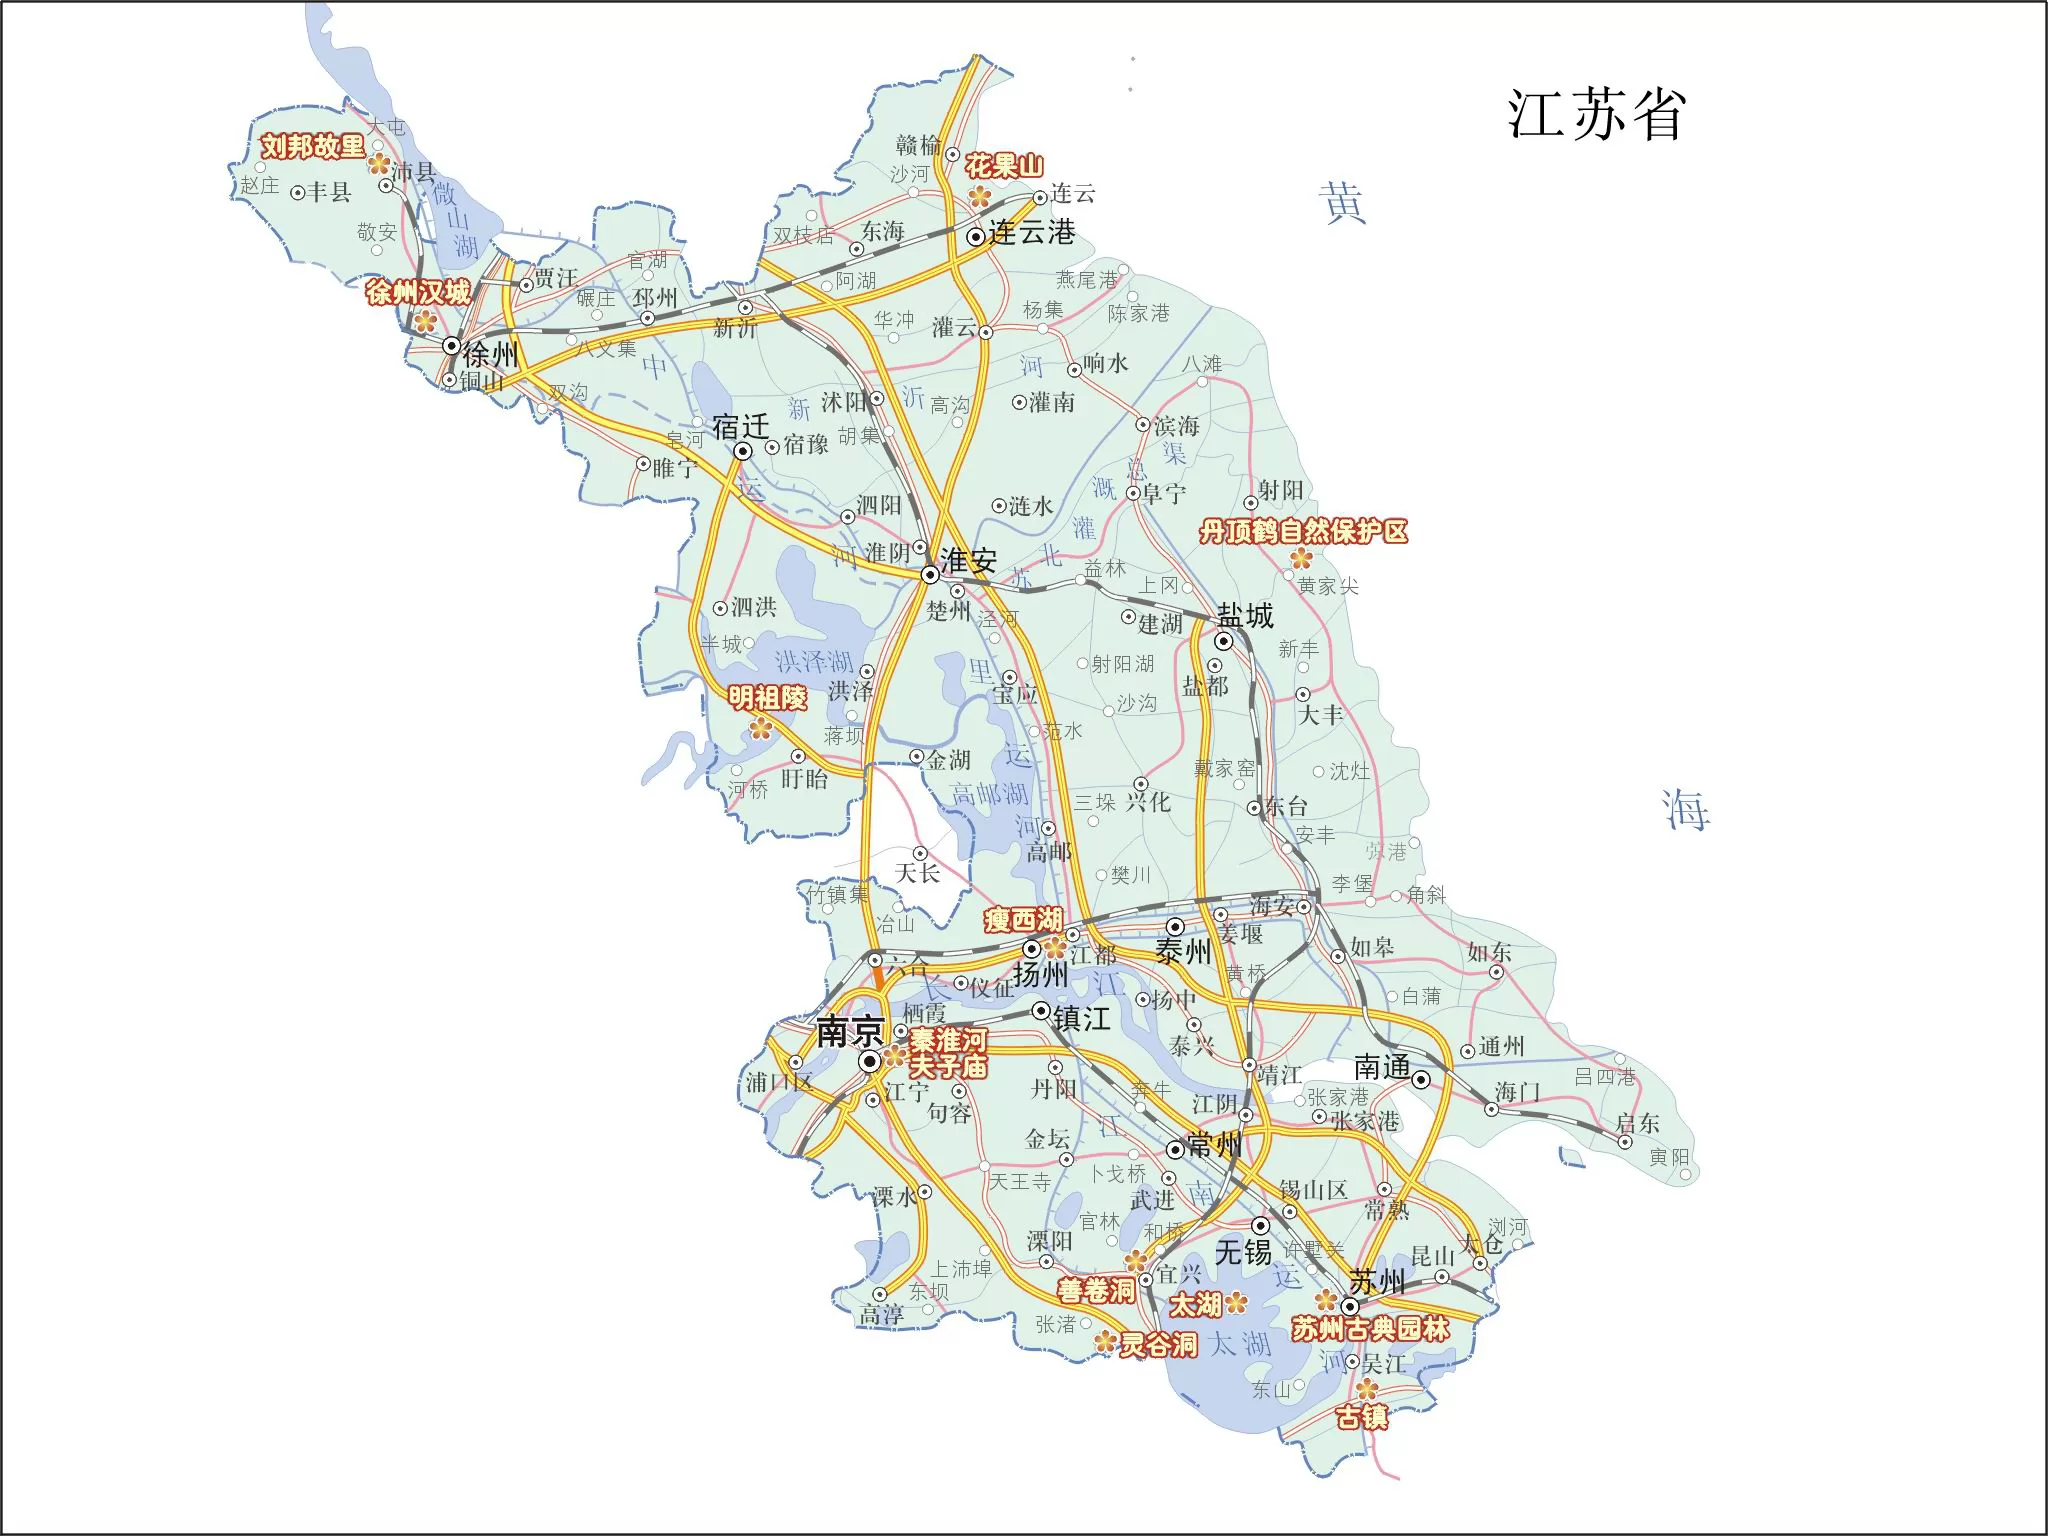 江苏省政区地图_江苏地图库